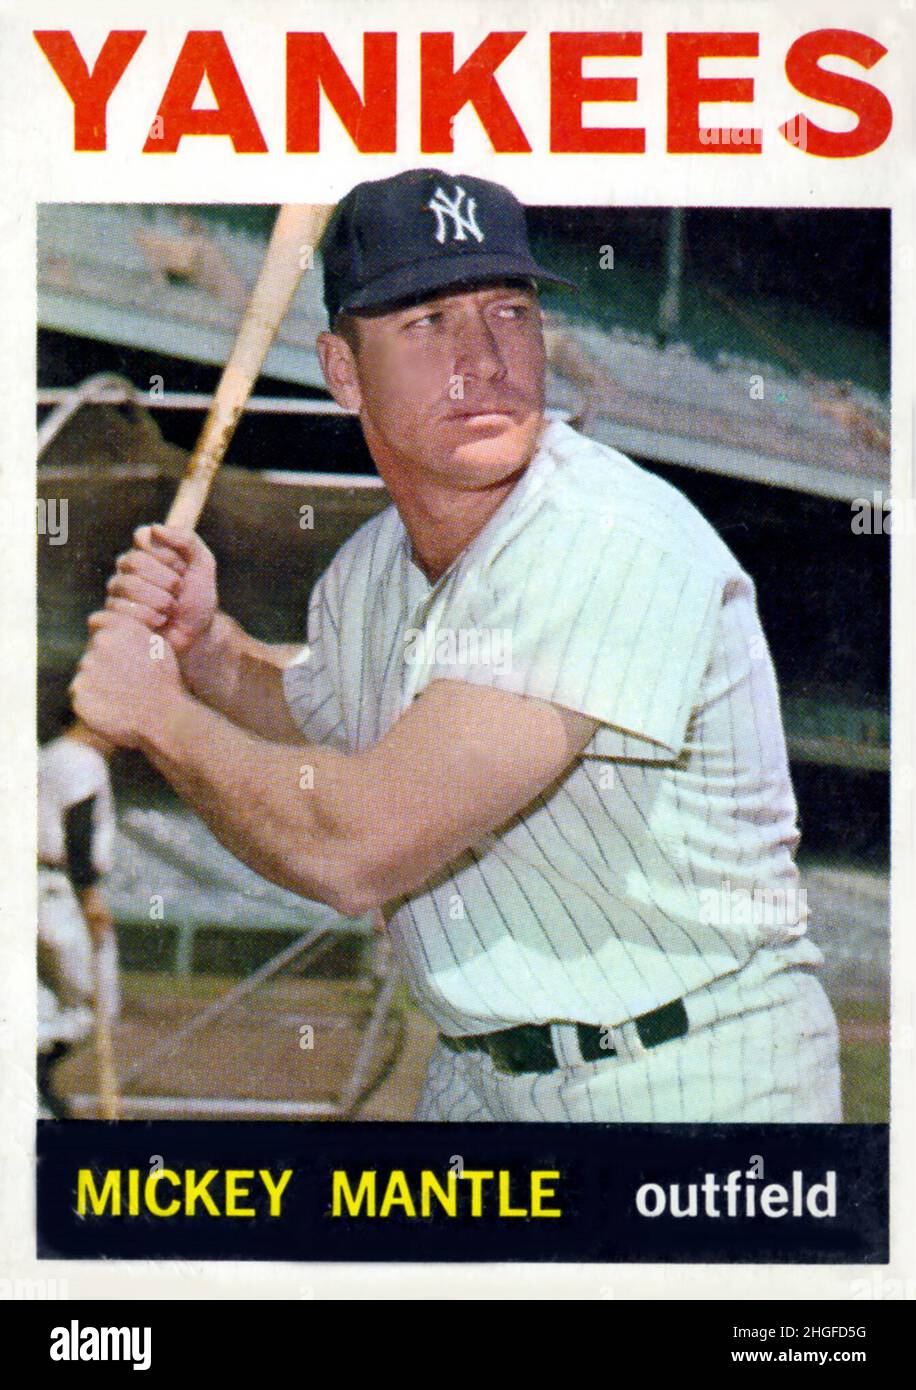 Una tarjeta de béisbol de 1964 Topps que representa al jugador del Salón de la Fama Mickey Mantle con los Yankees de Nueva York. Foto de stock